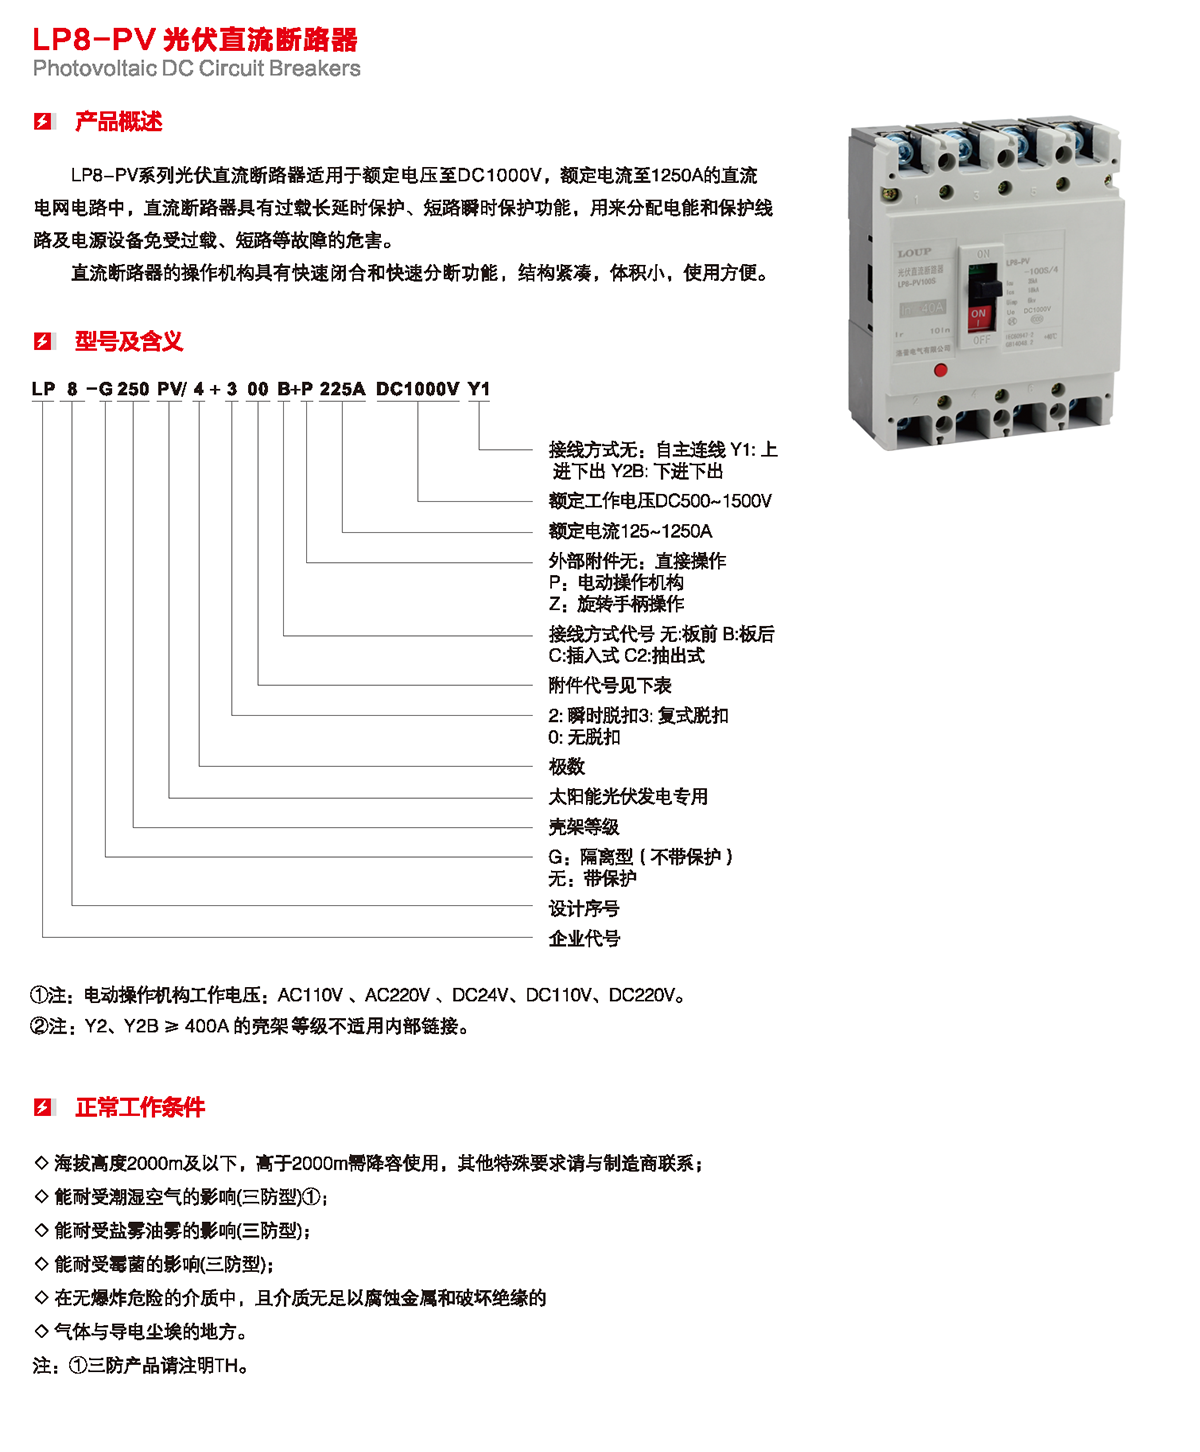 LP8-PV 光伏直流斷路器產品概述、型號含義、正常工作條件